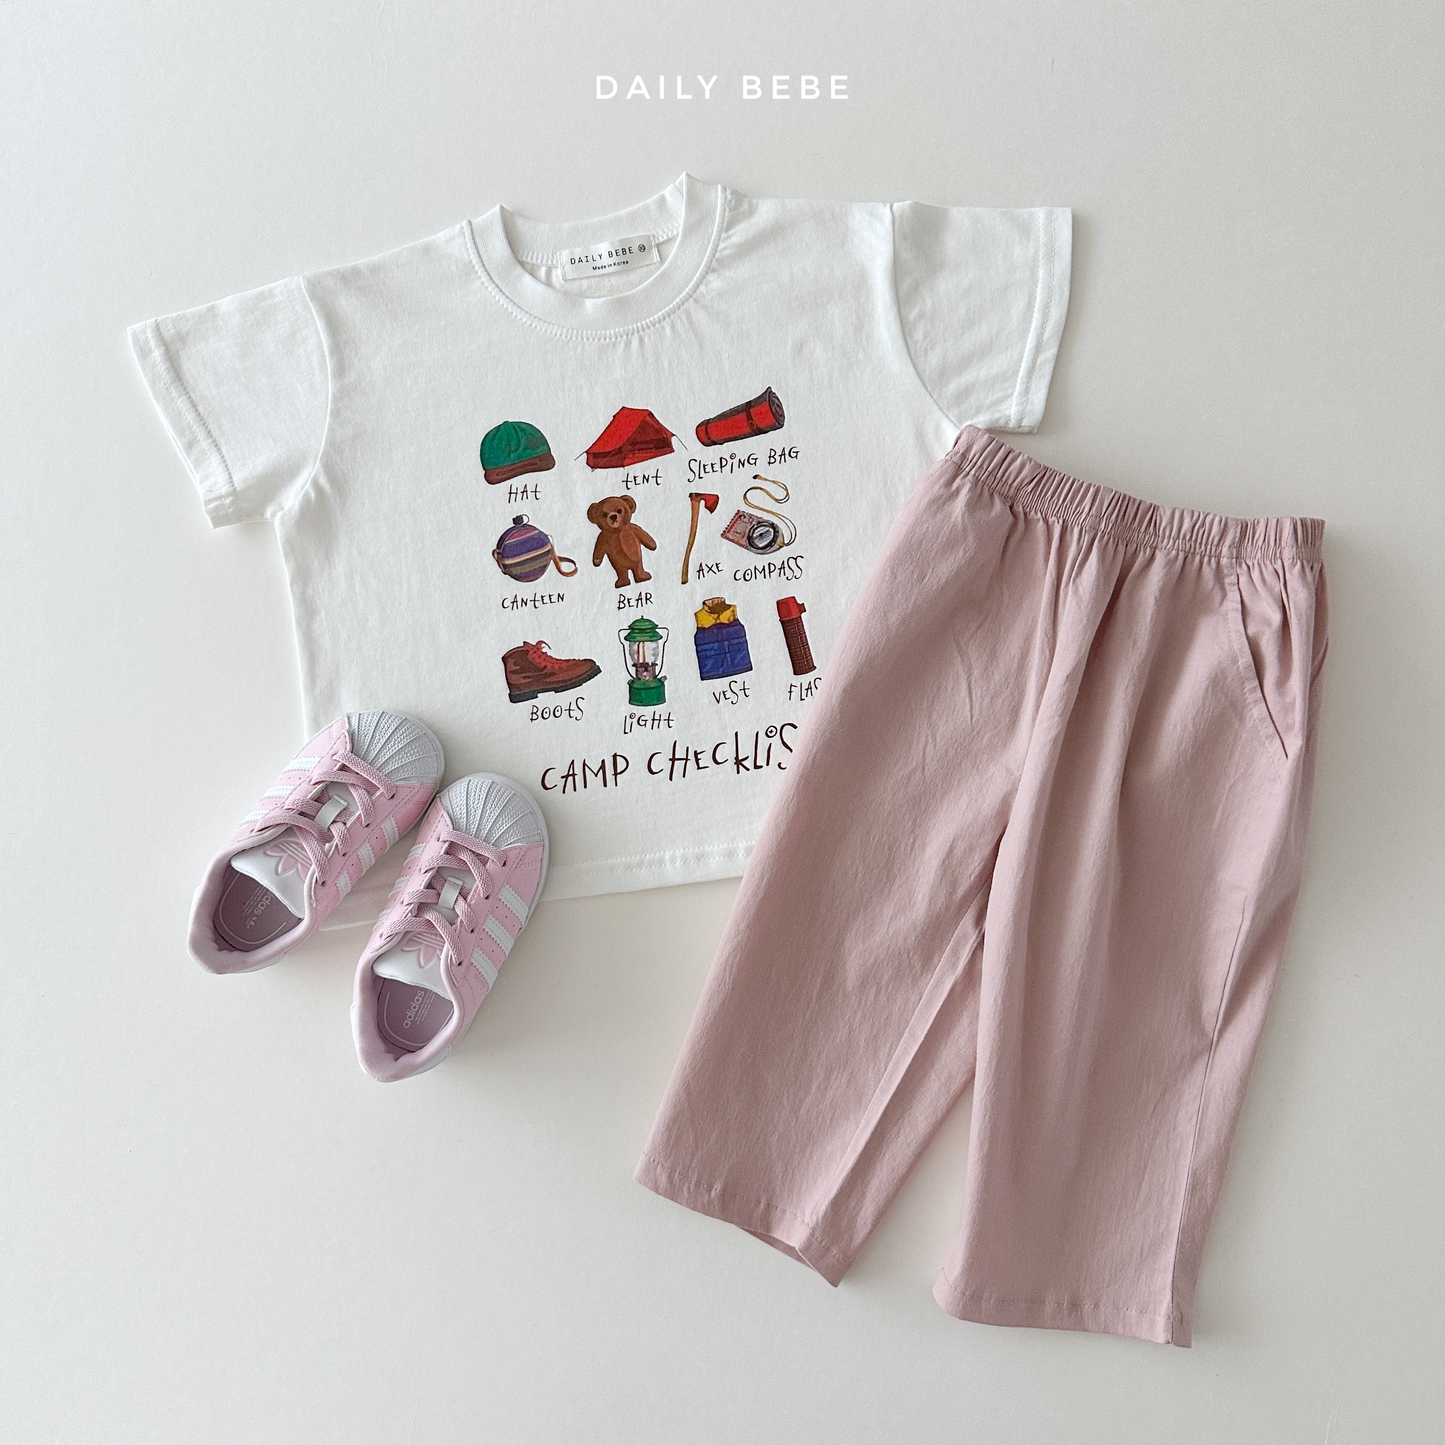 [Daily Bebe] Summer Span Pants